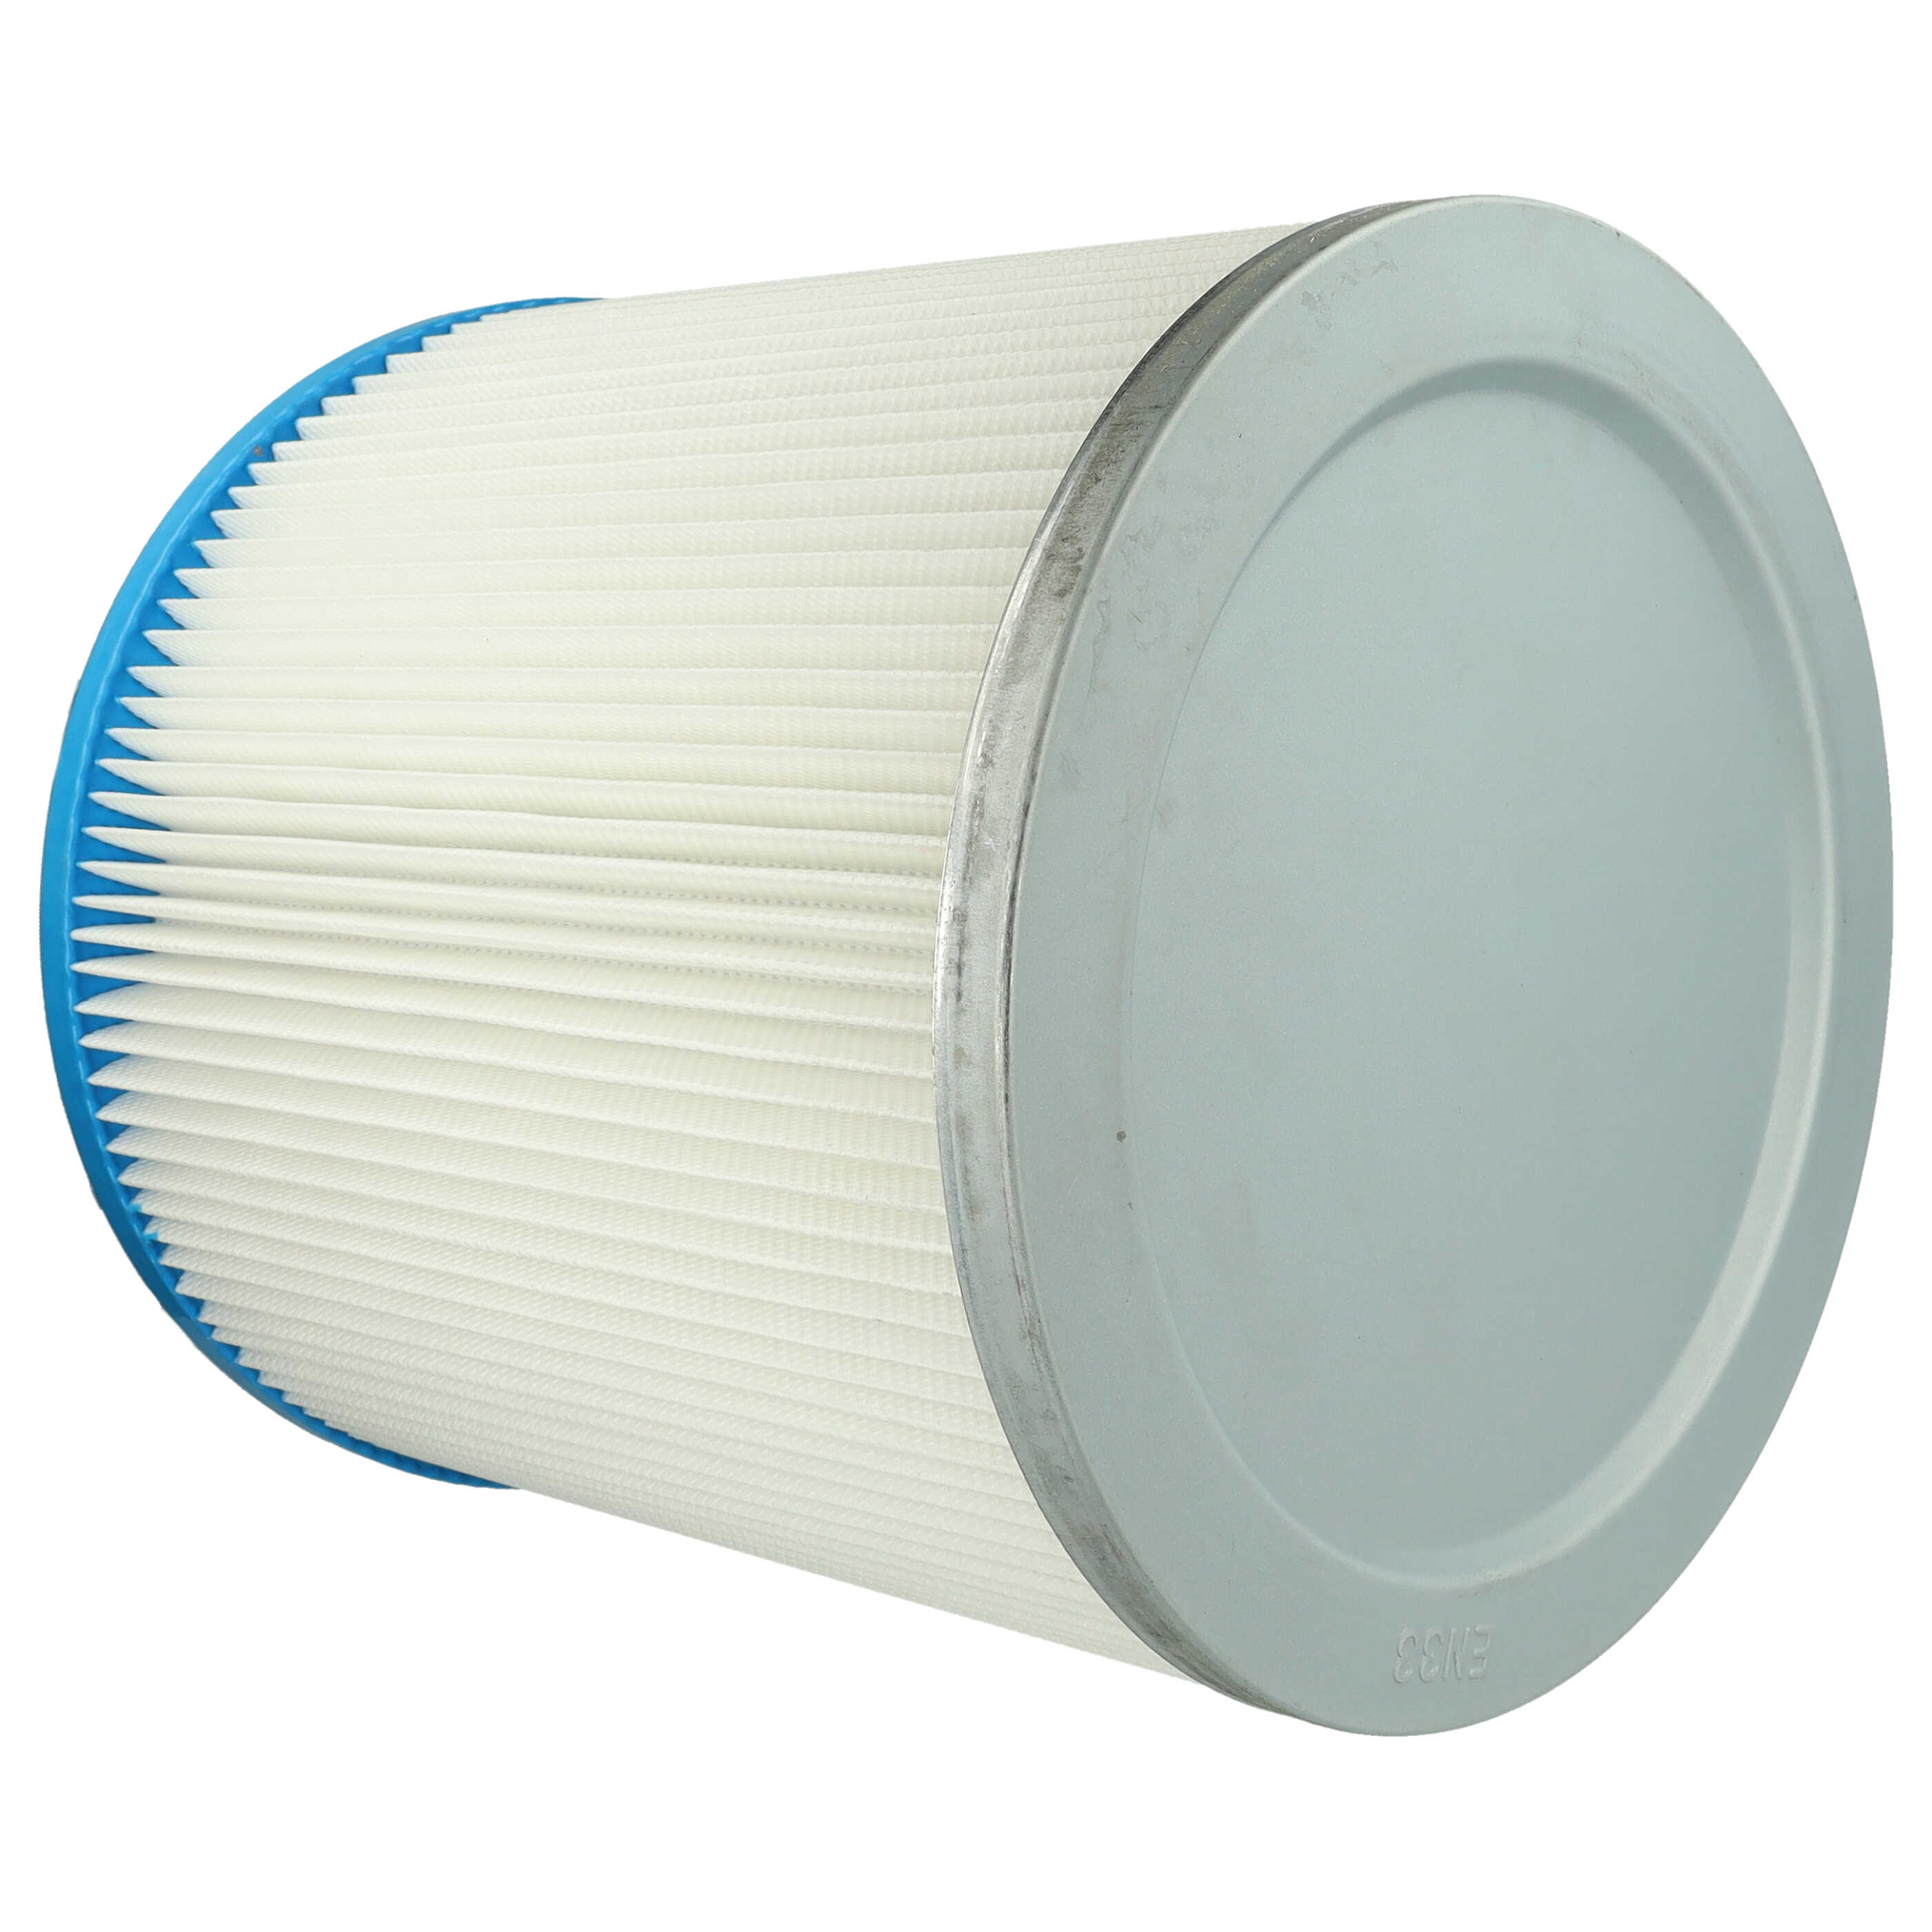 Filtr do odkurzacza Bosch zamiennik Bosch 2607432008 - wkład filtracyjny, biały / srebrny / niebieski